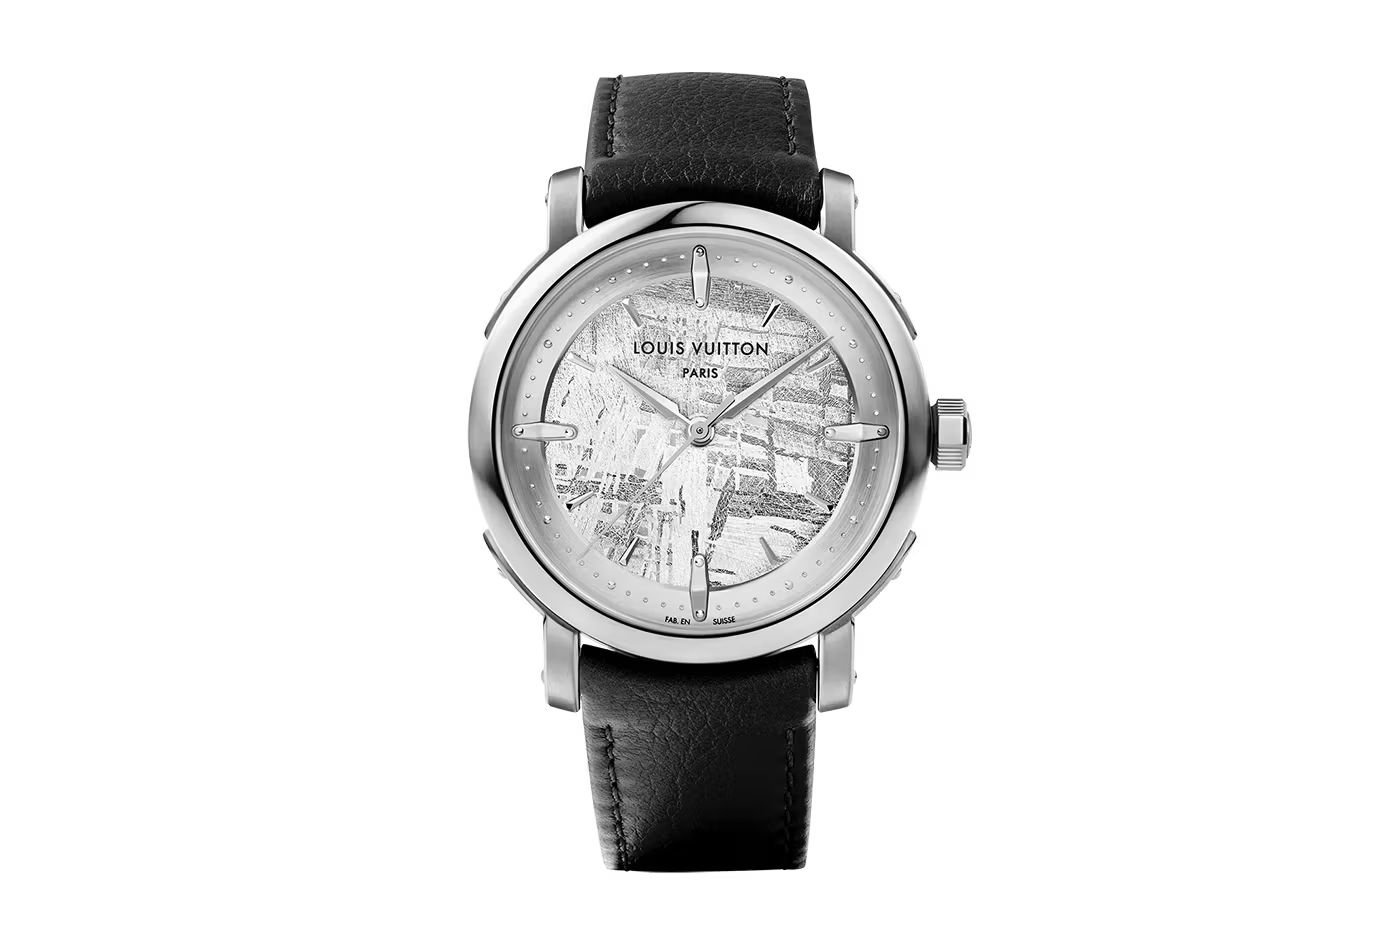 Louis Vuitton Apresenta uma Nova Coleção de Relógios Escale